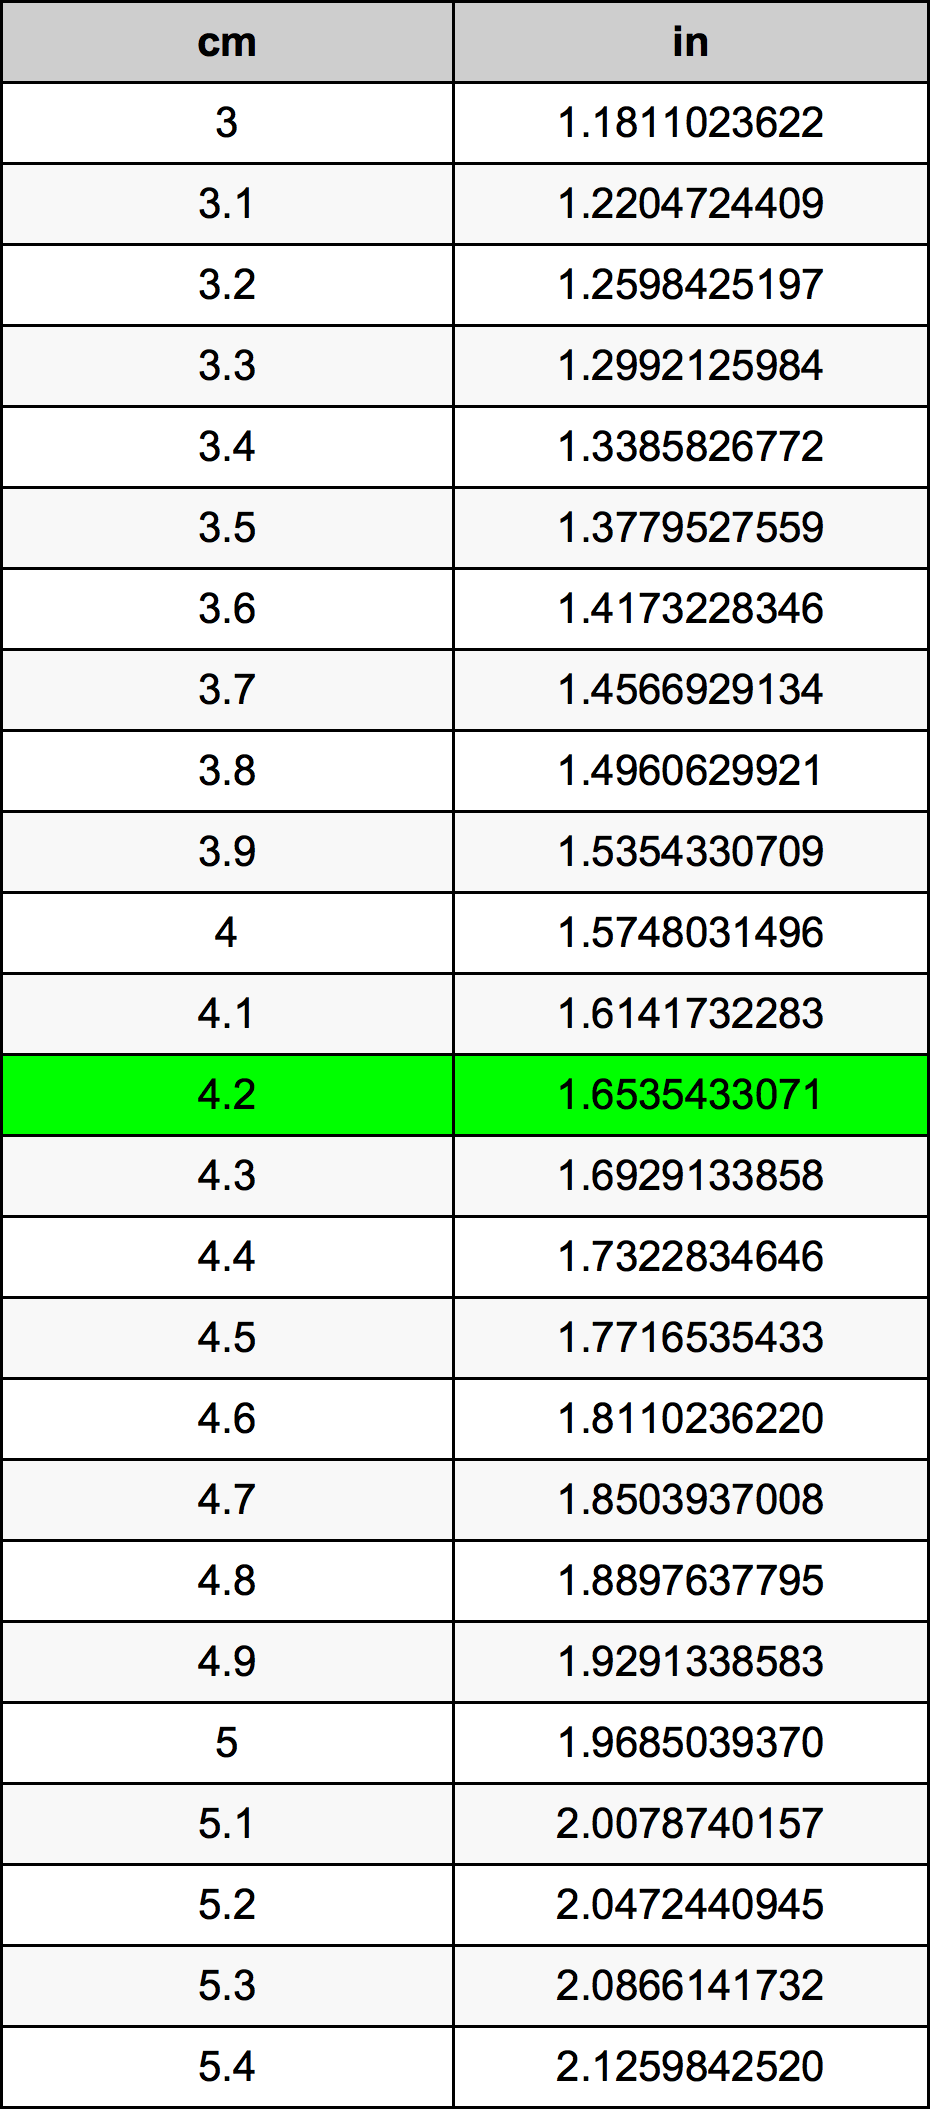 4.2 Centiméter átszámítási táblázat